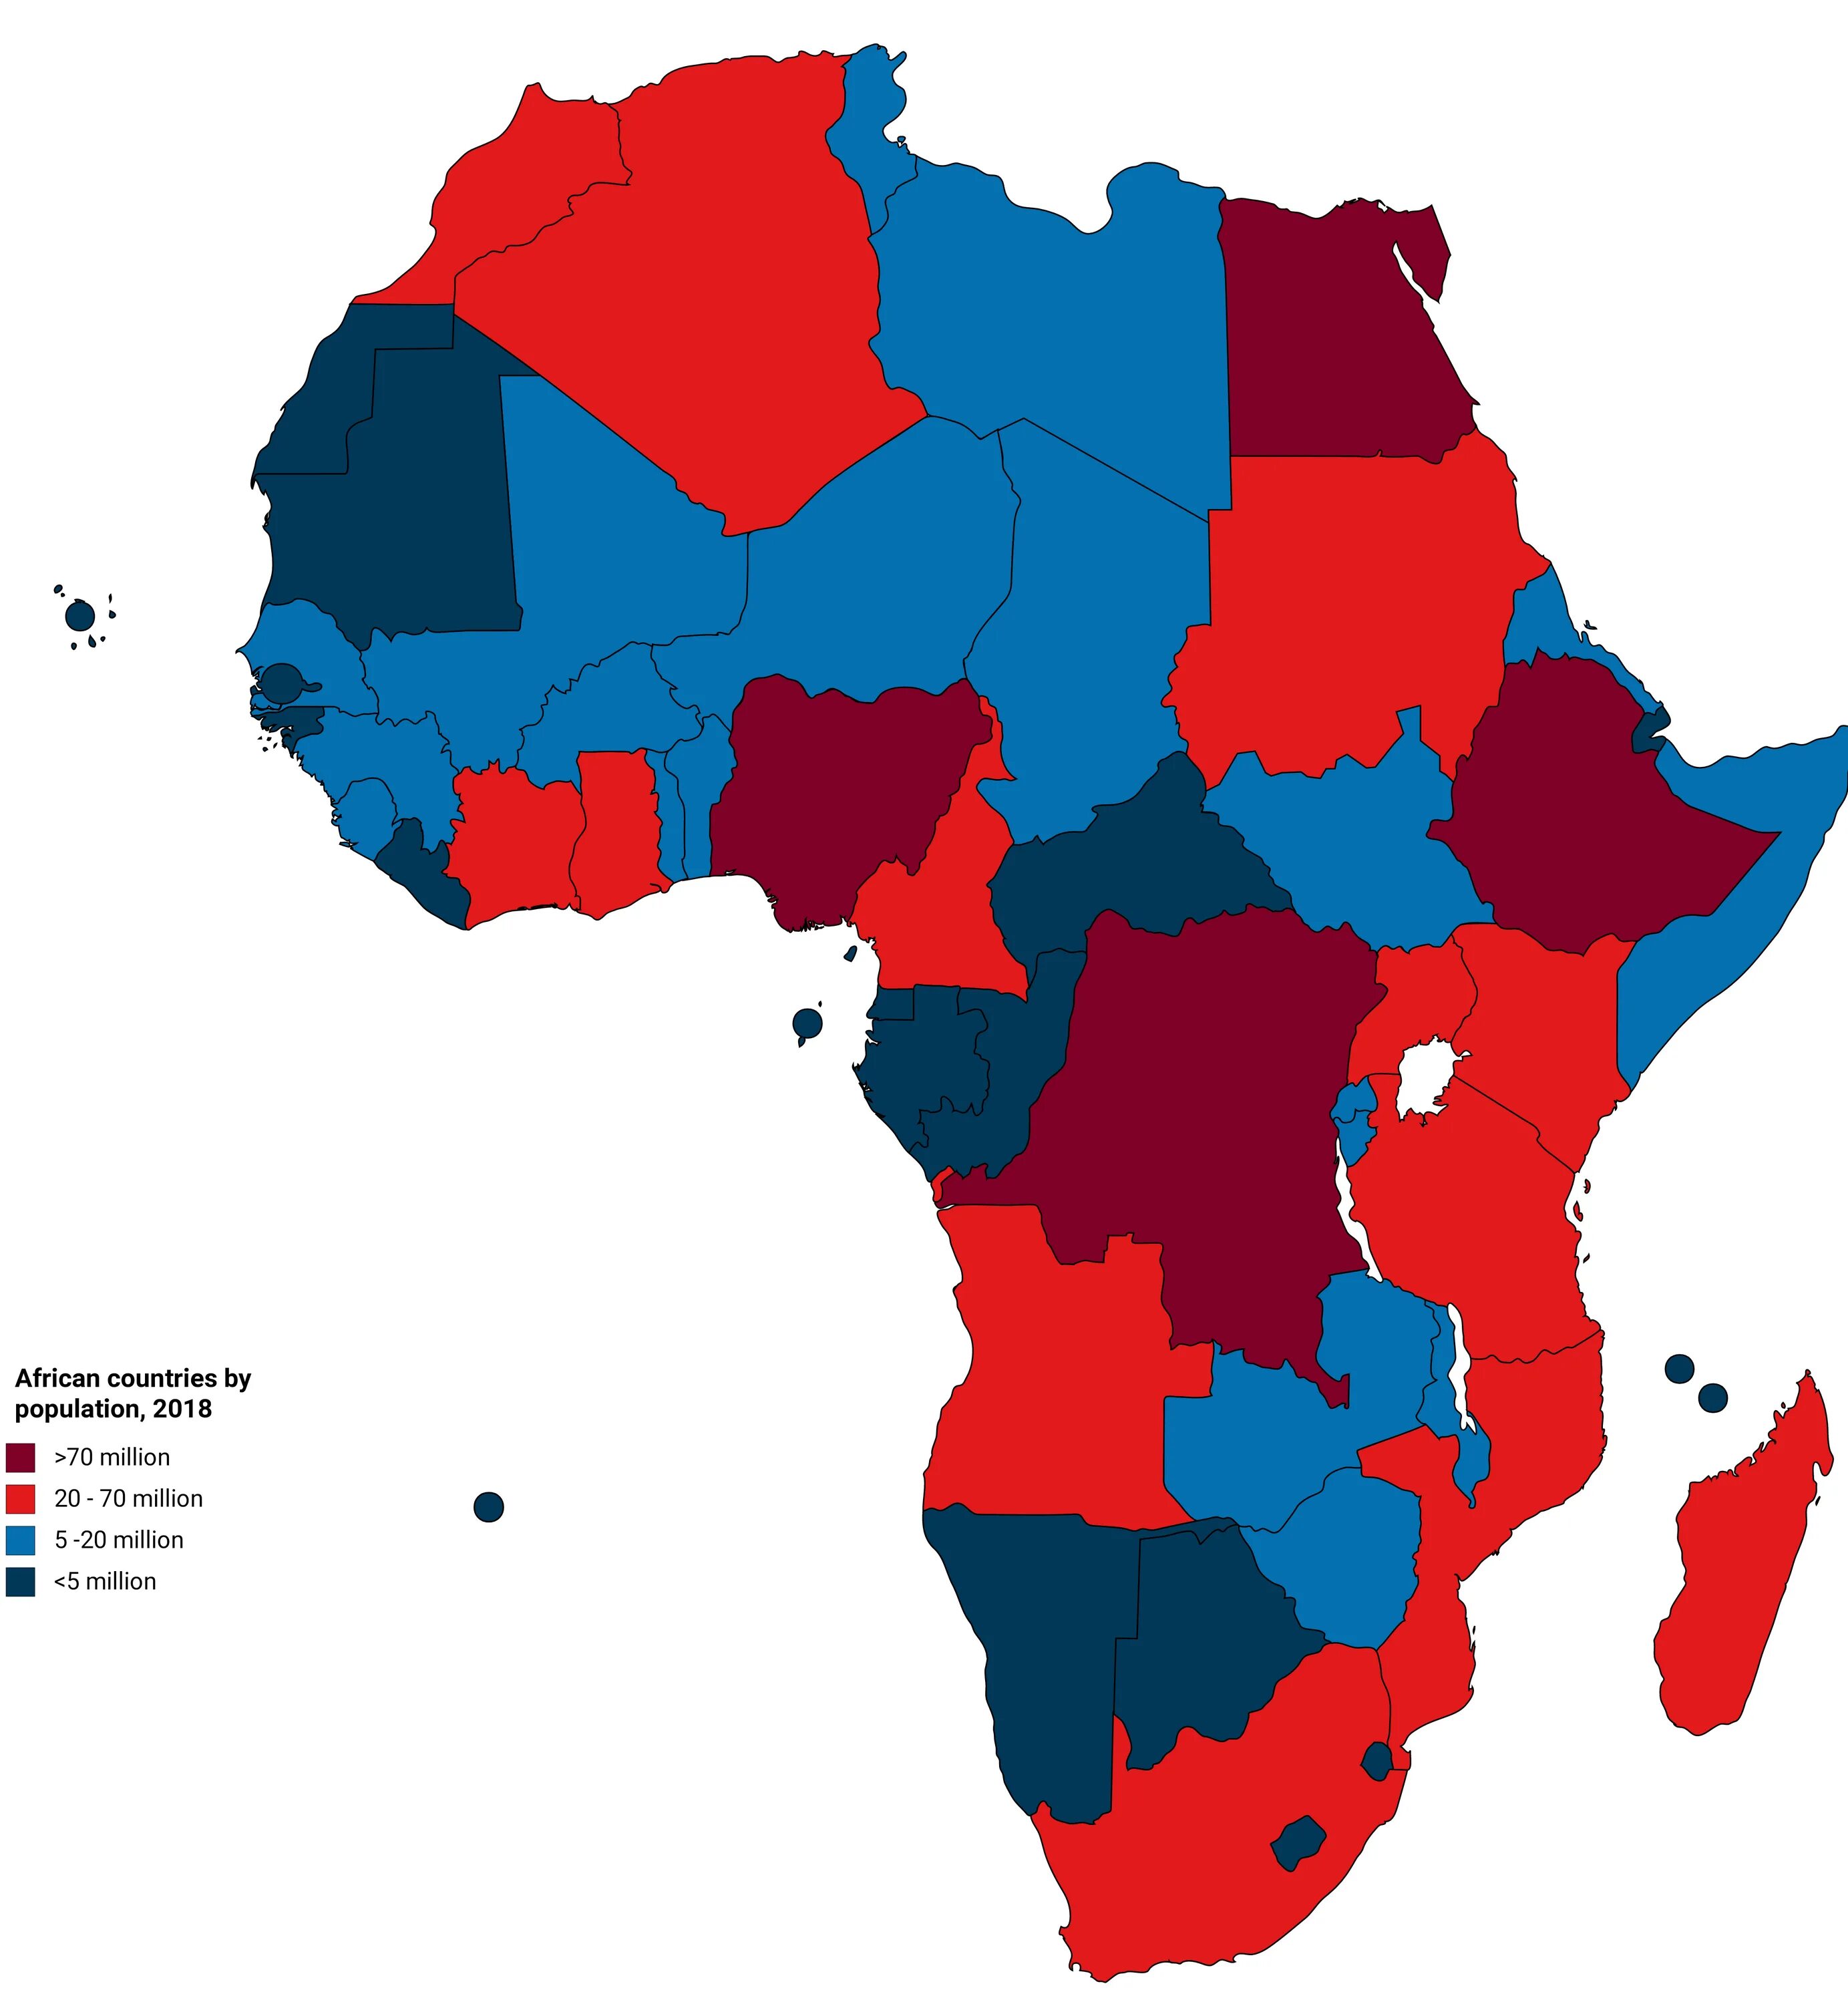 African countries. Безопасные страны Африки. Карта Африки. Безопасность стран Африки. Богатые регионы Африки.